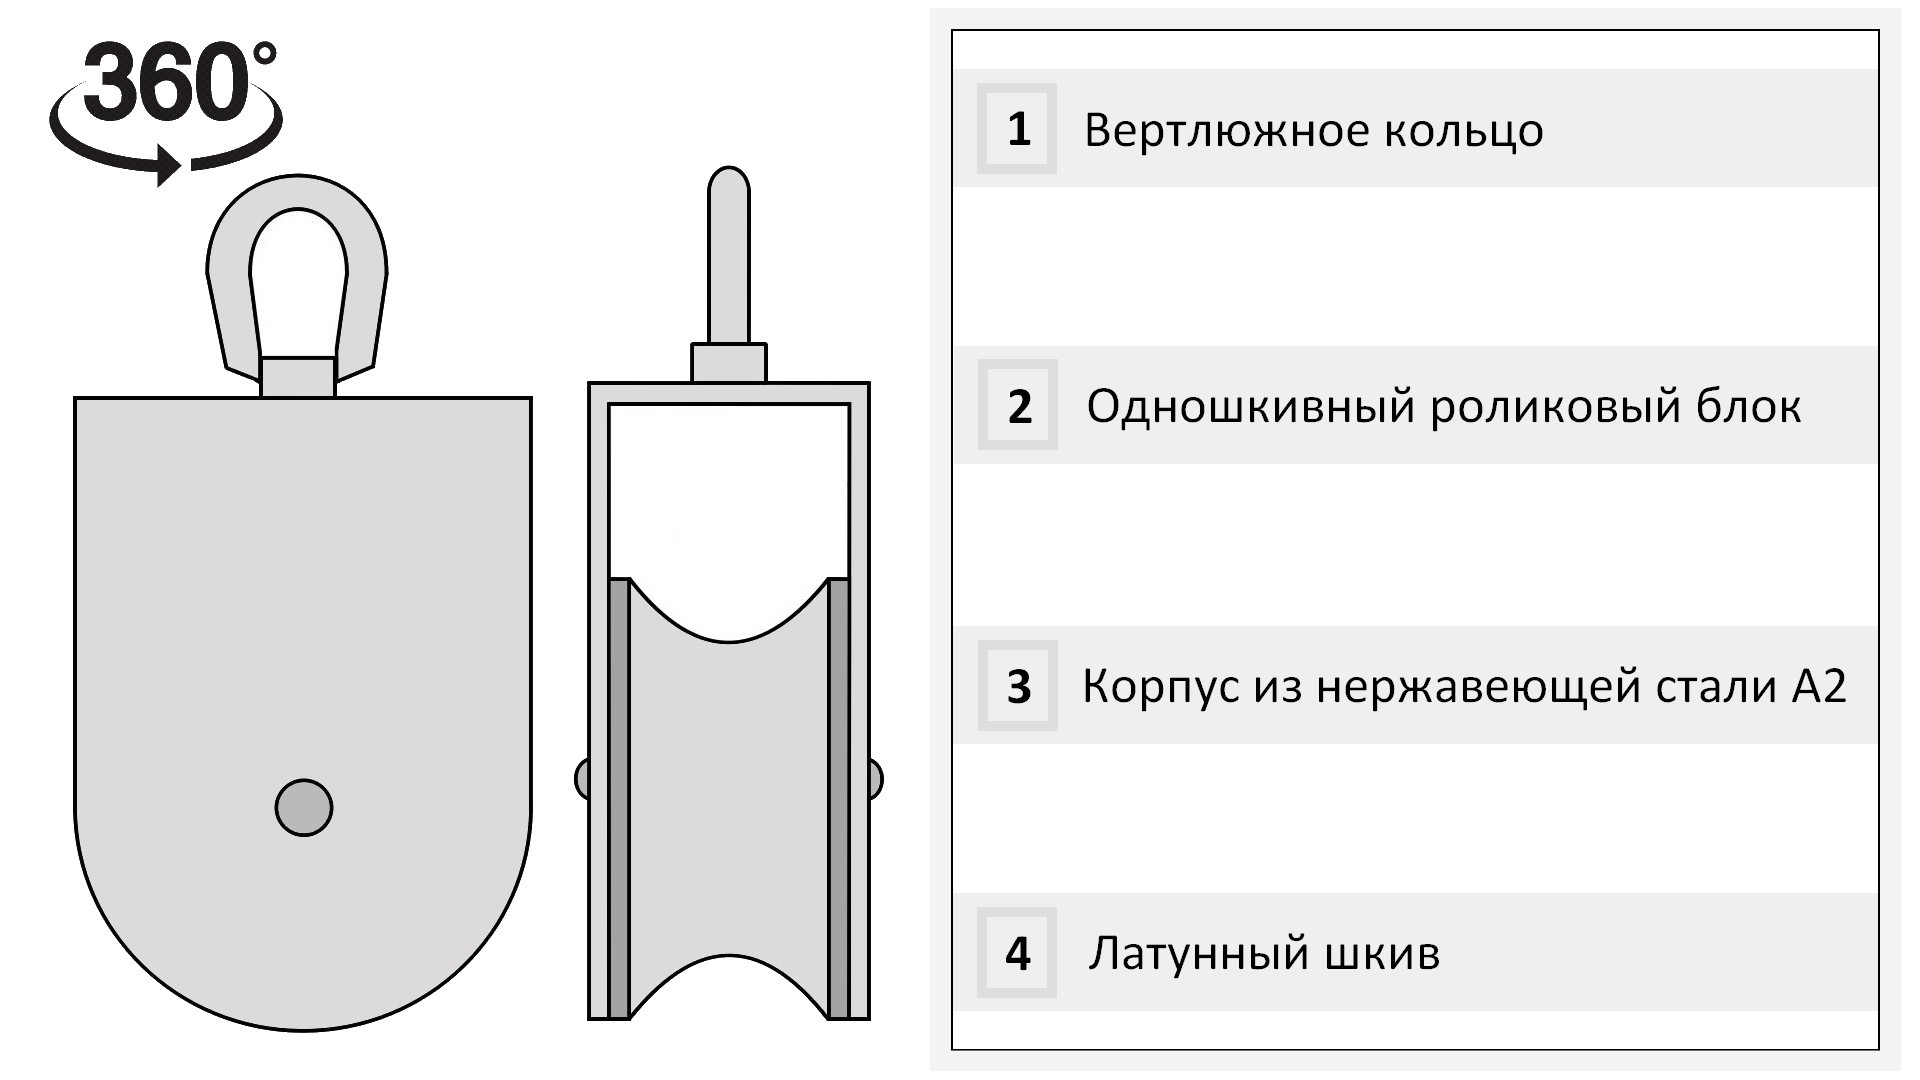 Такелажный блок для троса 14 мм с латунной втулкой 50 мм 8392-A, нержавеющая сталь А2 - фото